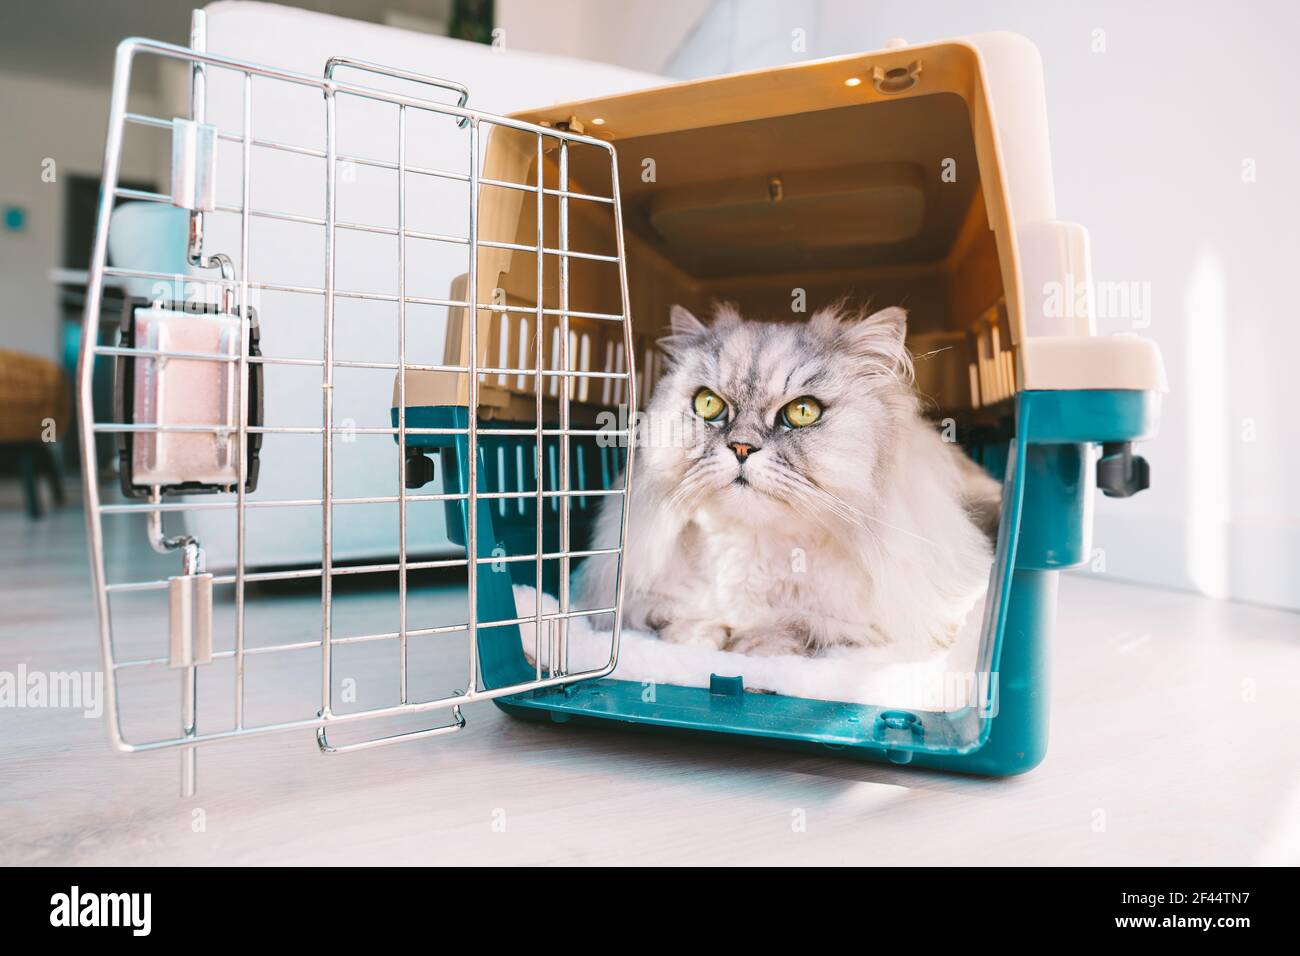 Beau chat persan gris à poil long avec de grands yeux verts à l'intérieur d'un porte-animal en plastique, d'une cage ou d'une boîte de voyage. Transport des animaux. Banque D'Images